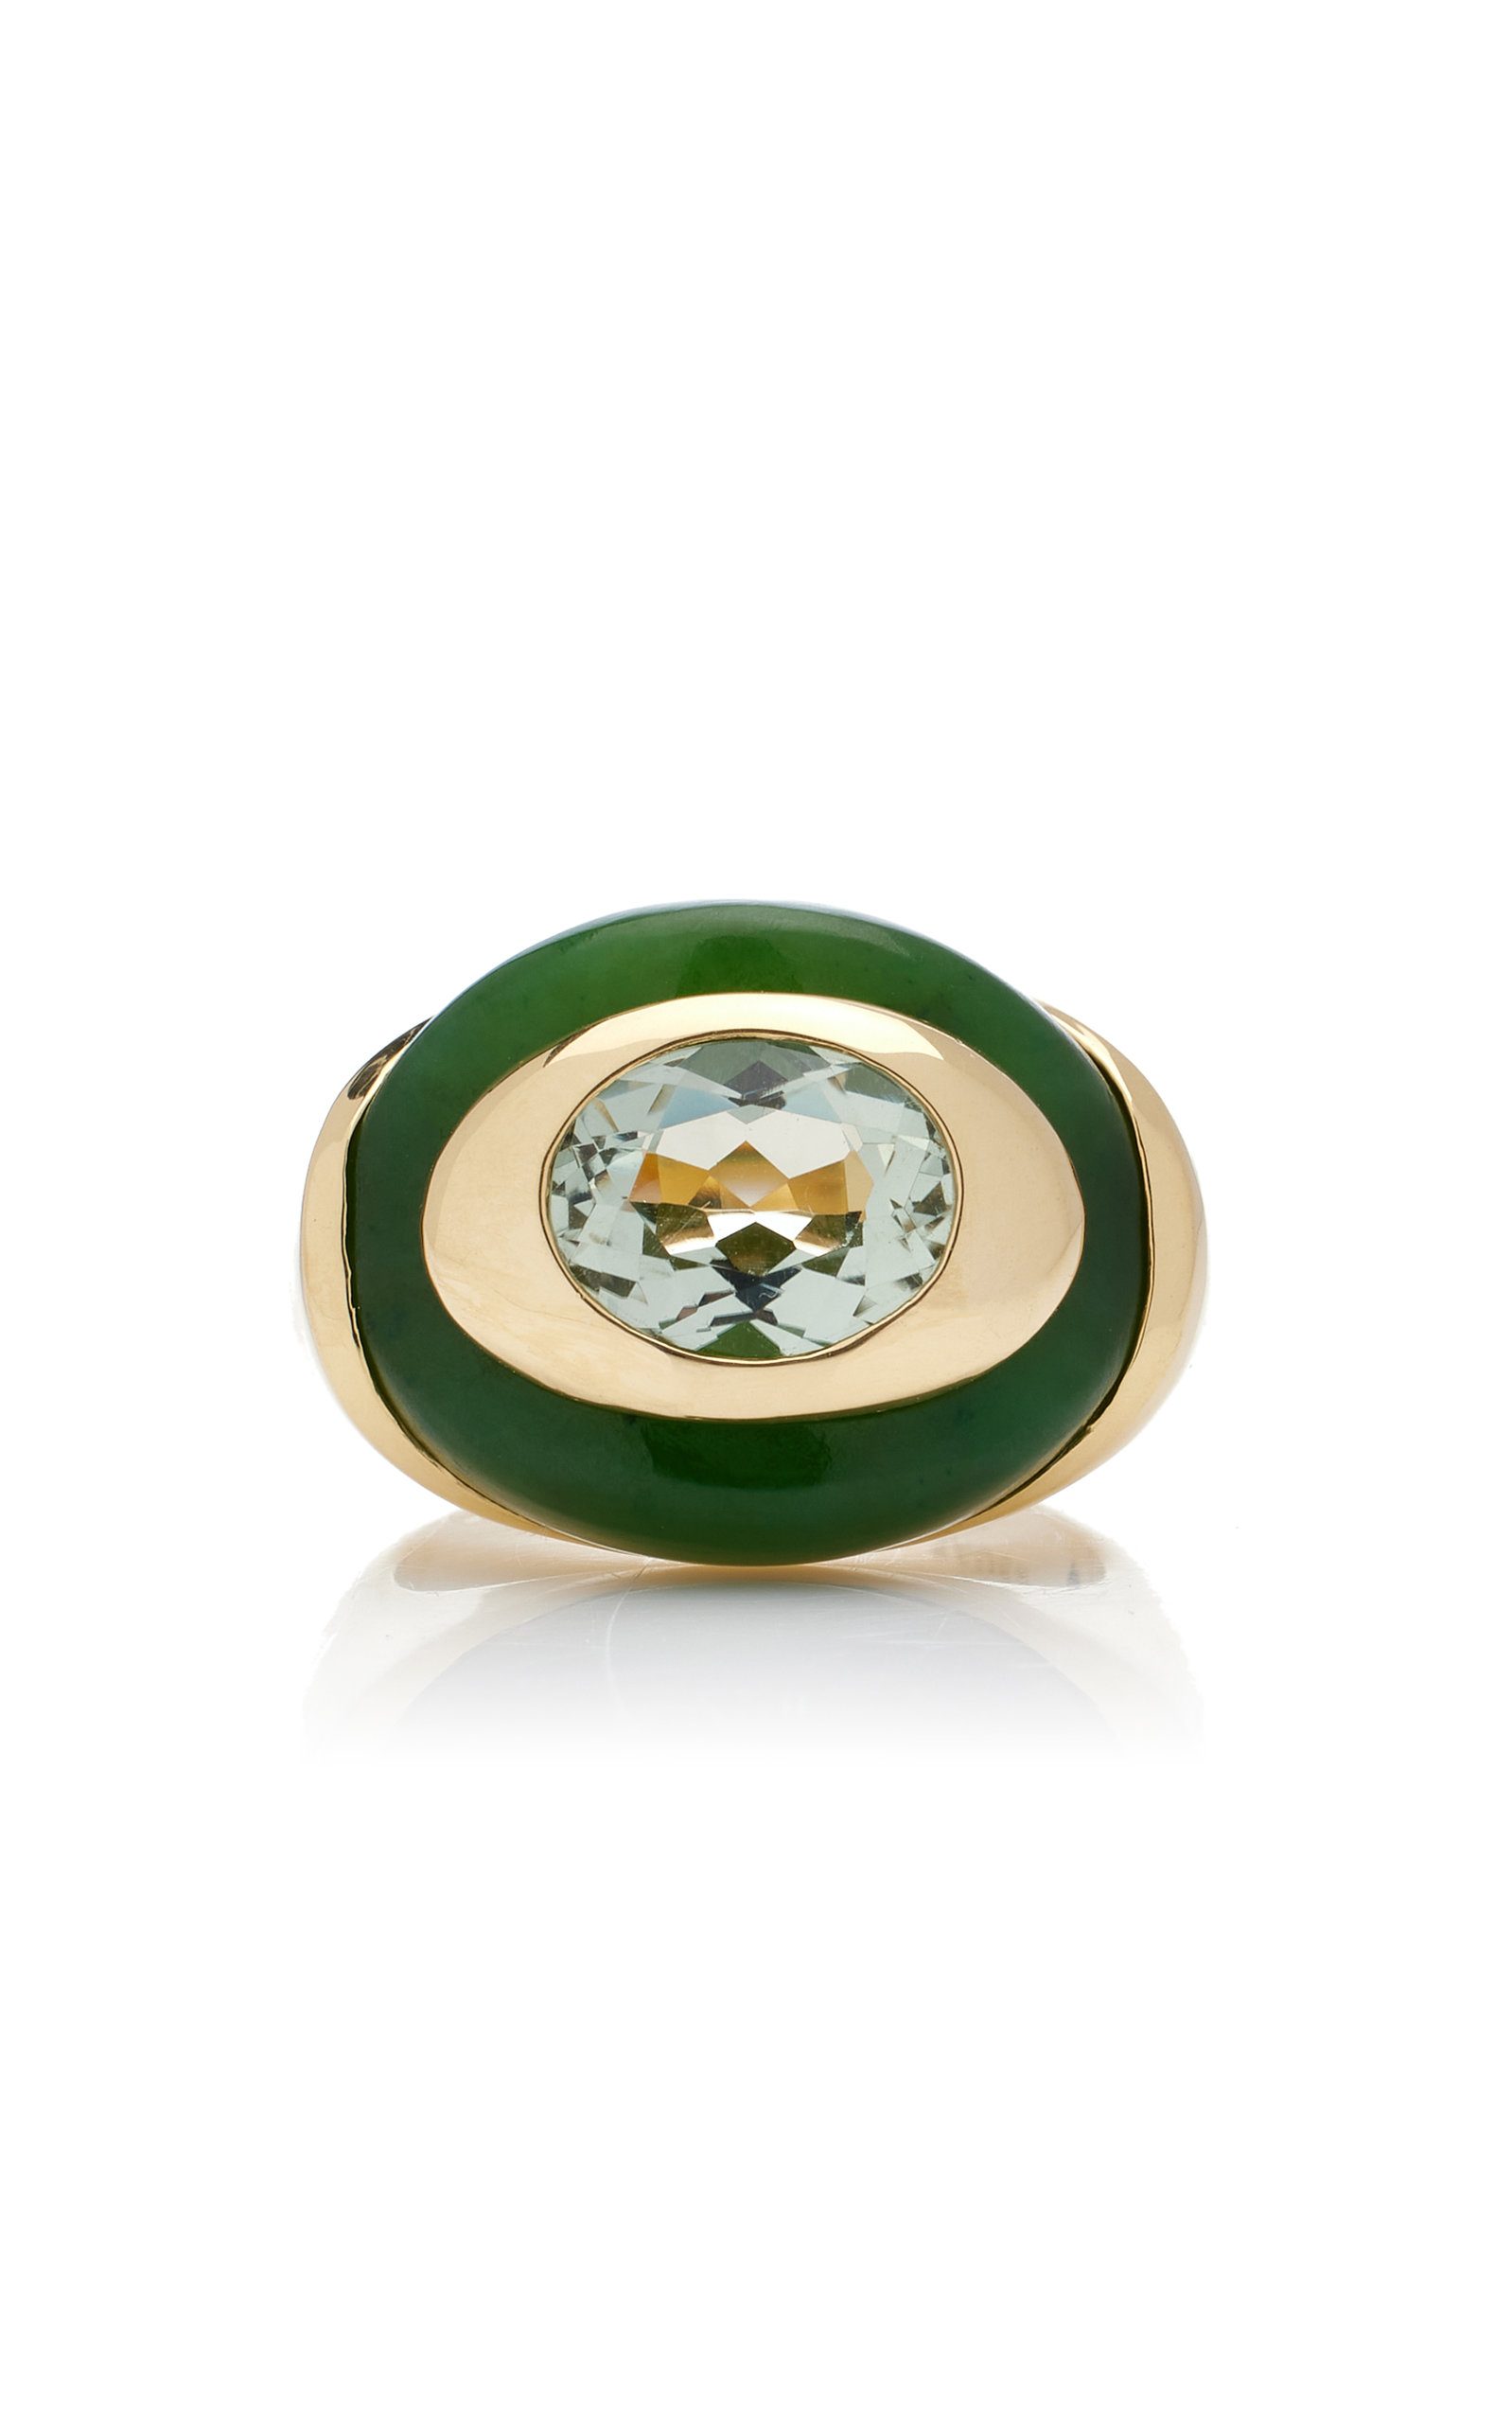 Igapó 18K Yellow Gold Jade; Prasiolite Ring